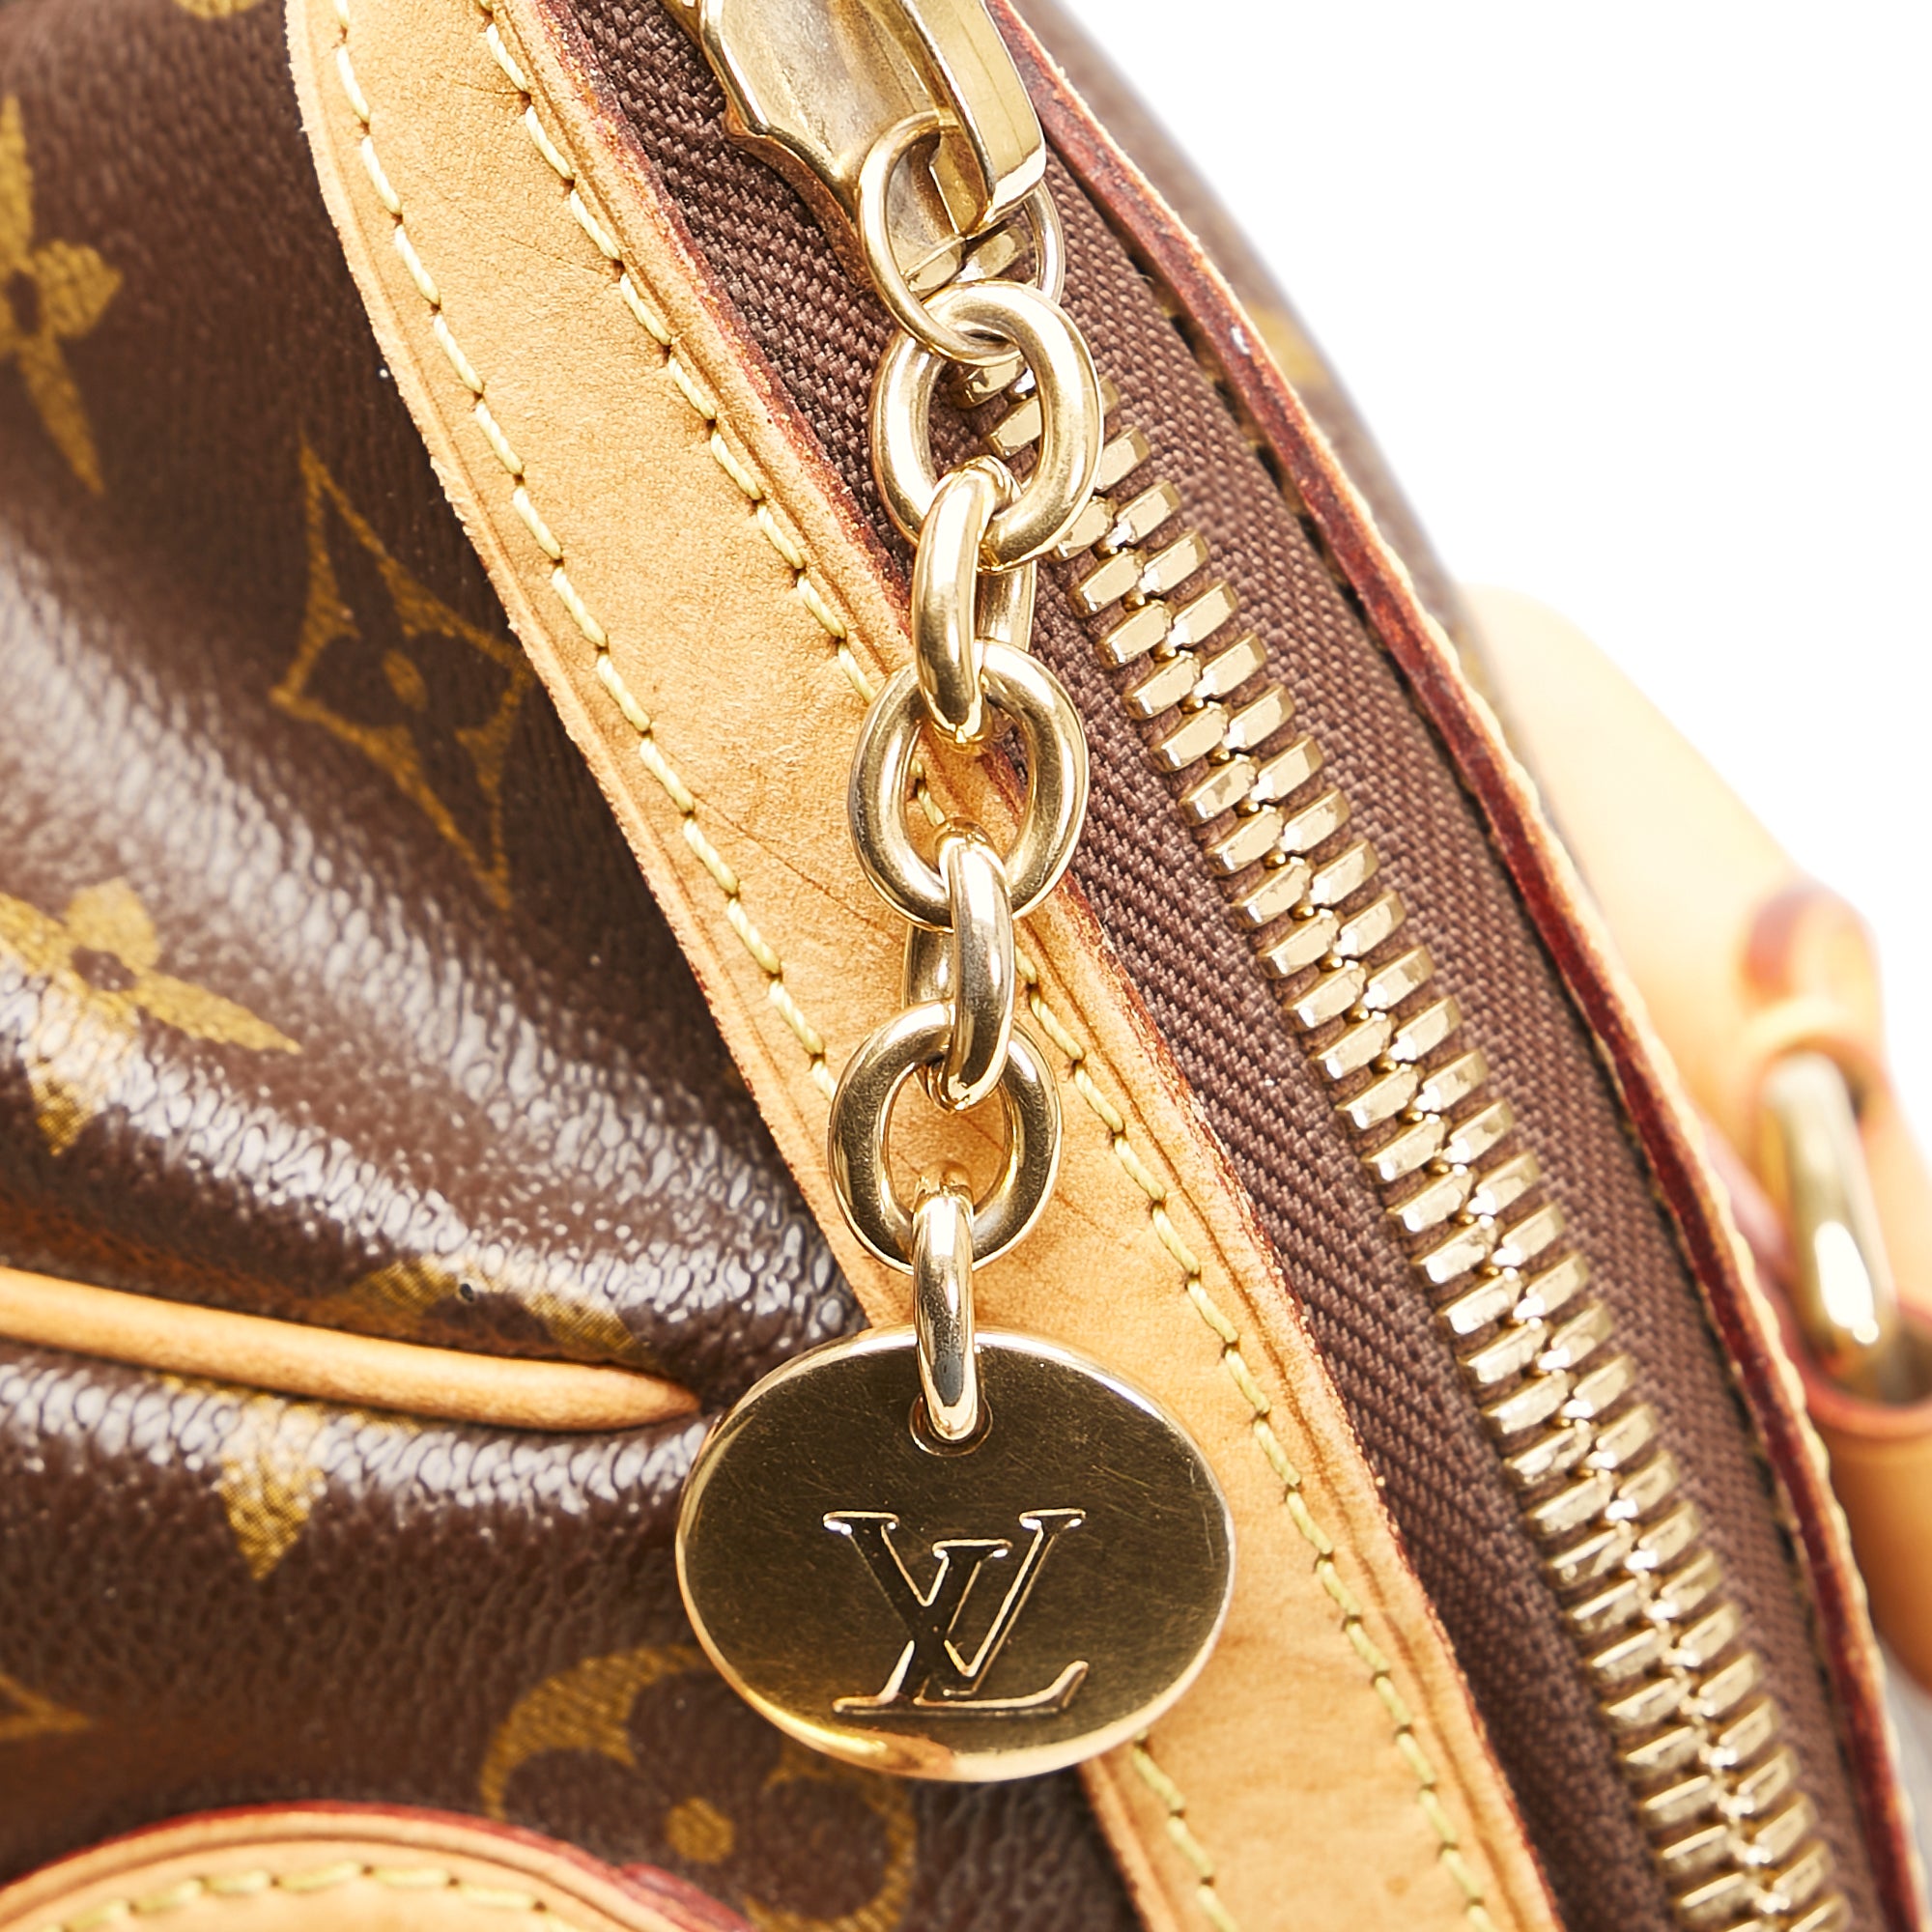 Louis Vuitton Tivoli PM Monogram Canvas Shoulder Bag on SALE